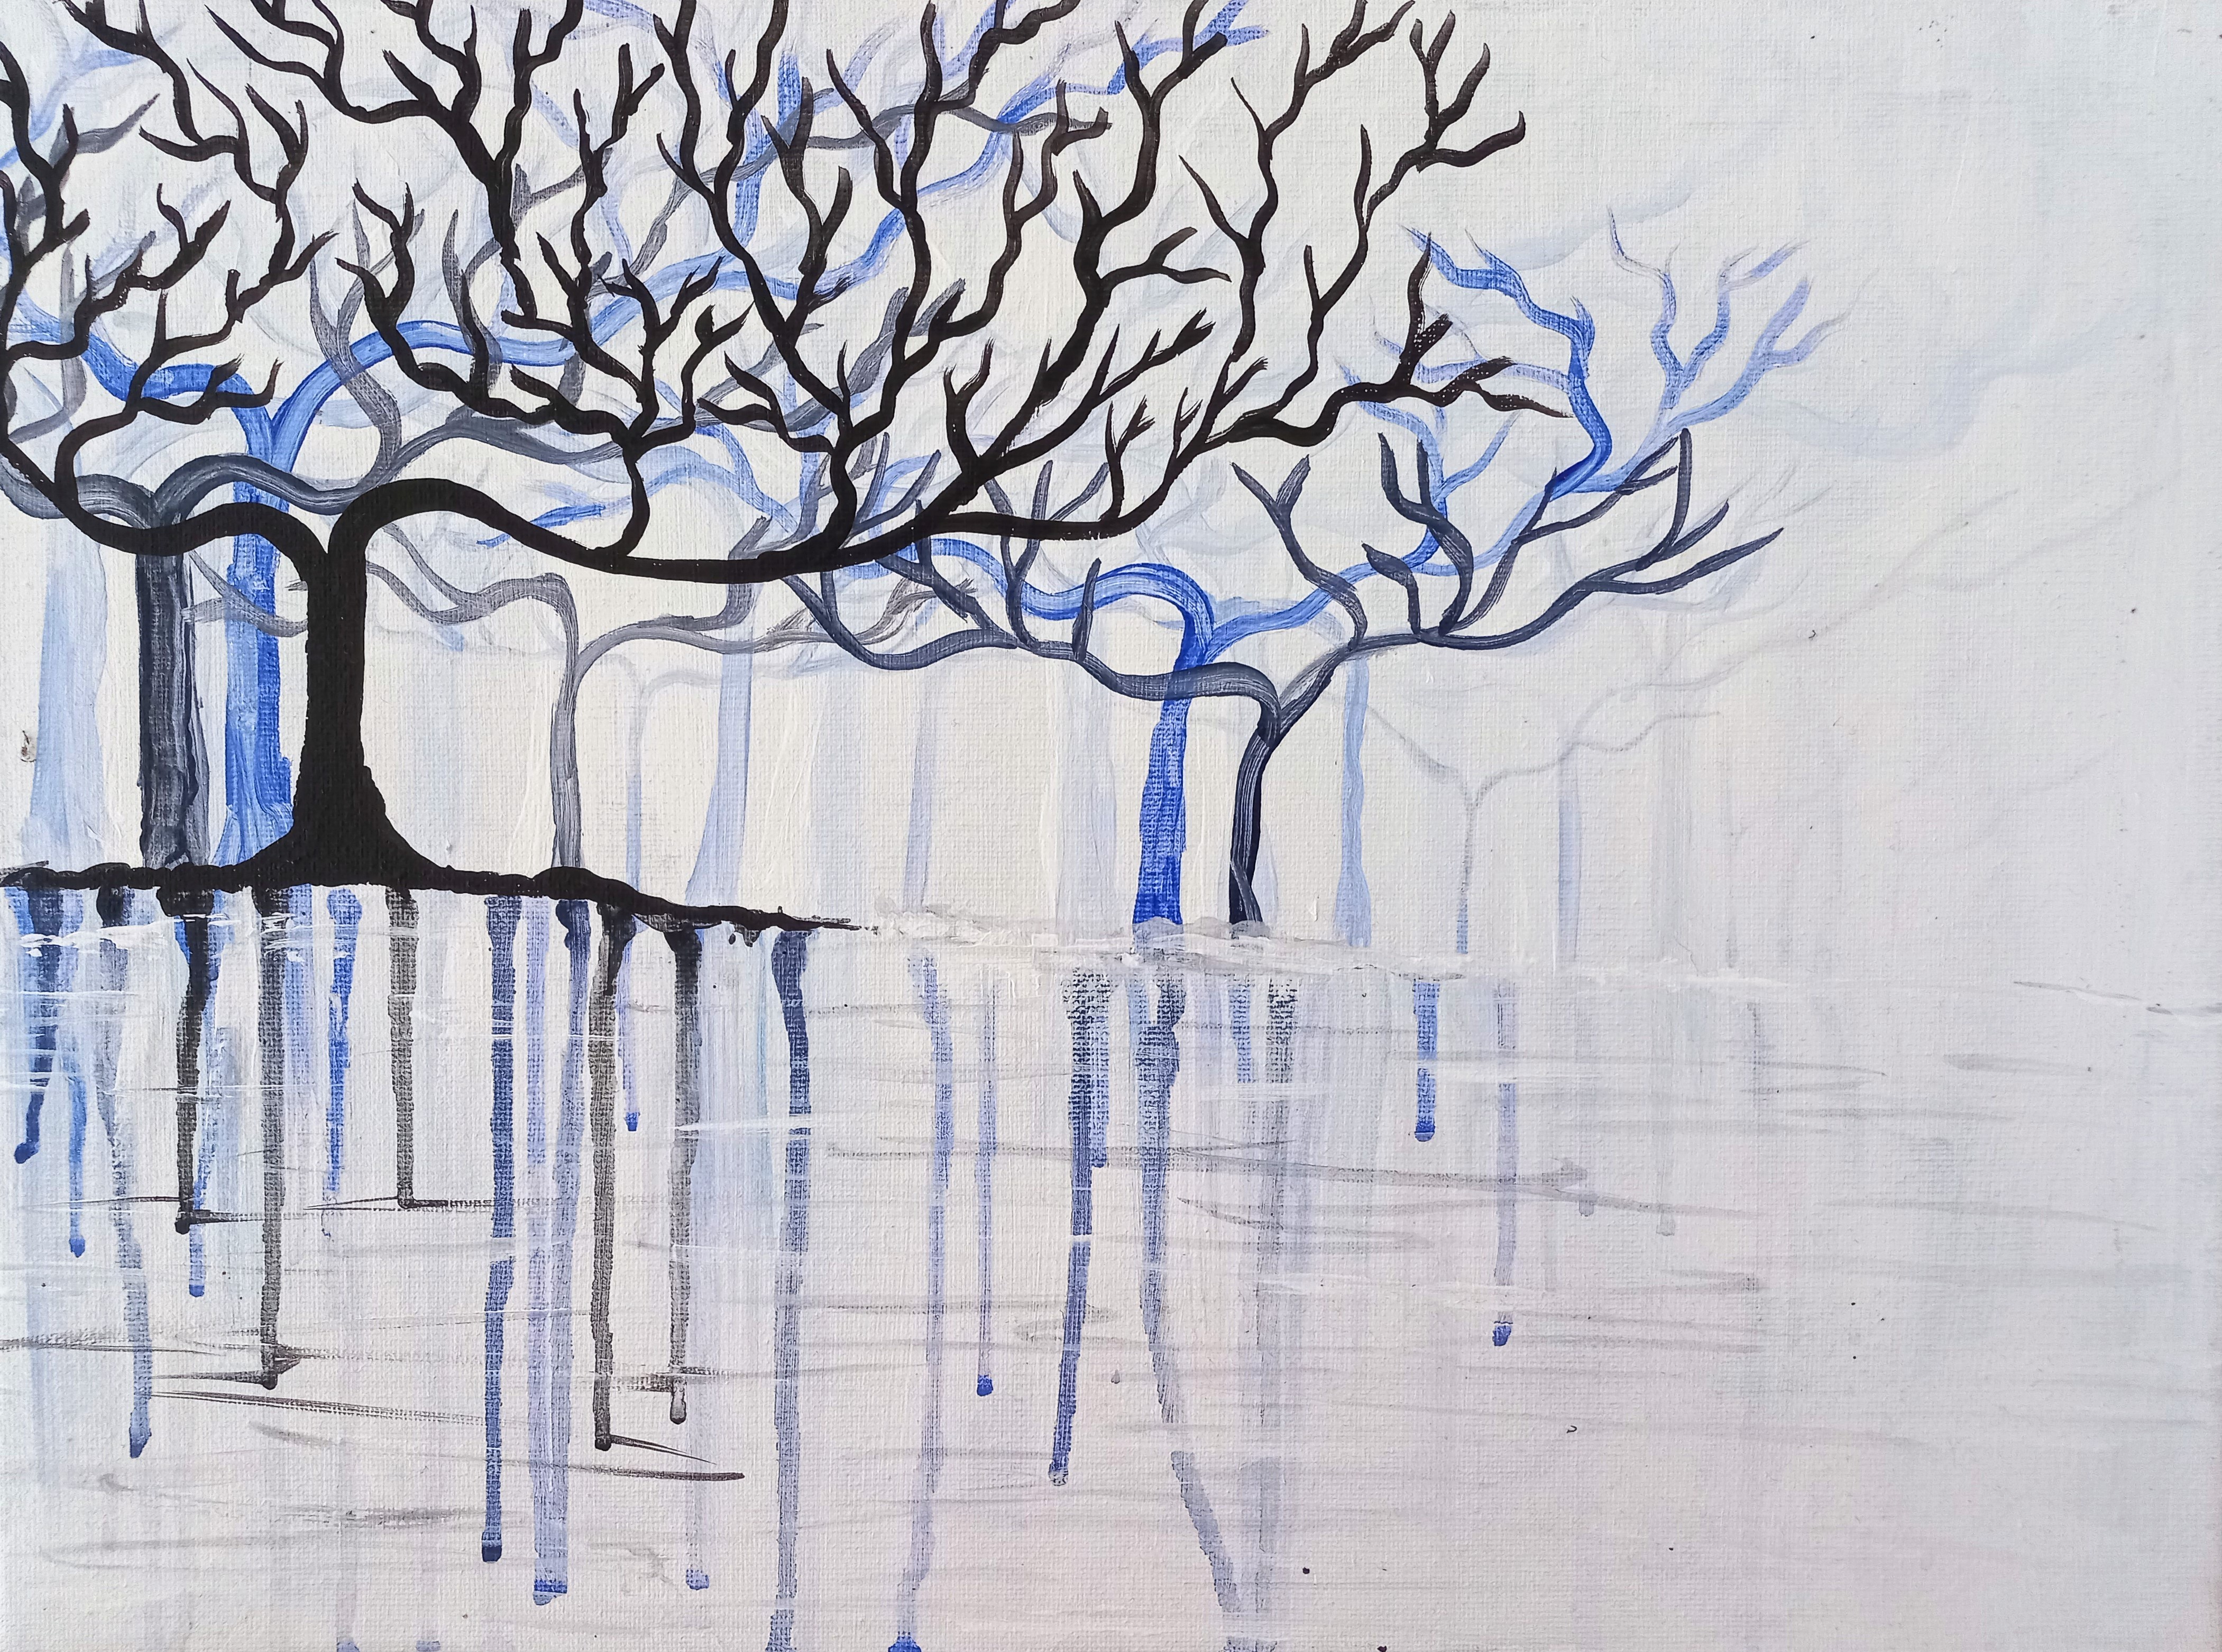 The Winter Lake by Amaya Ranatunge